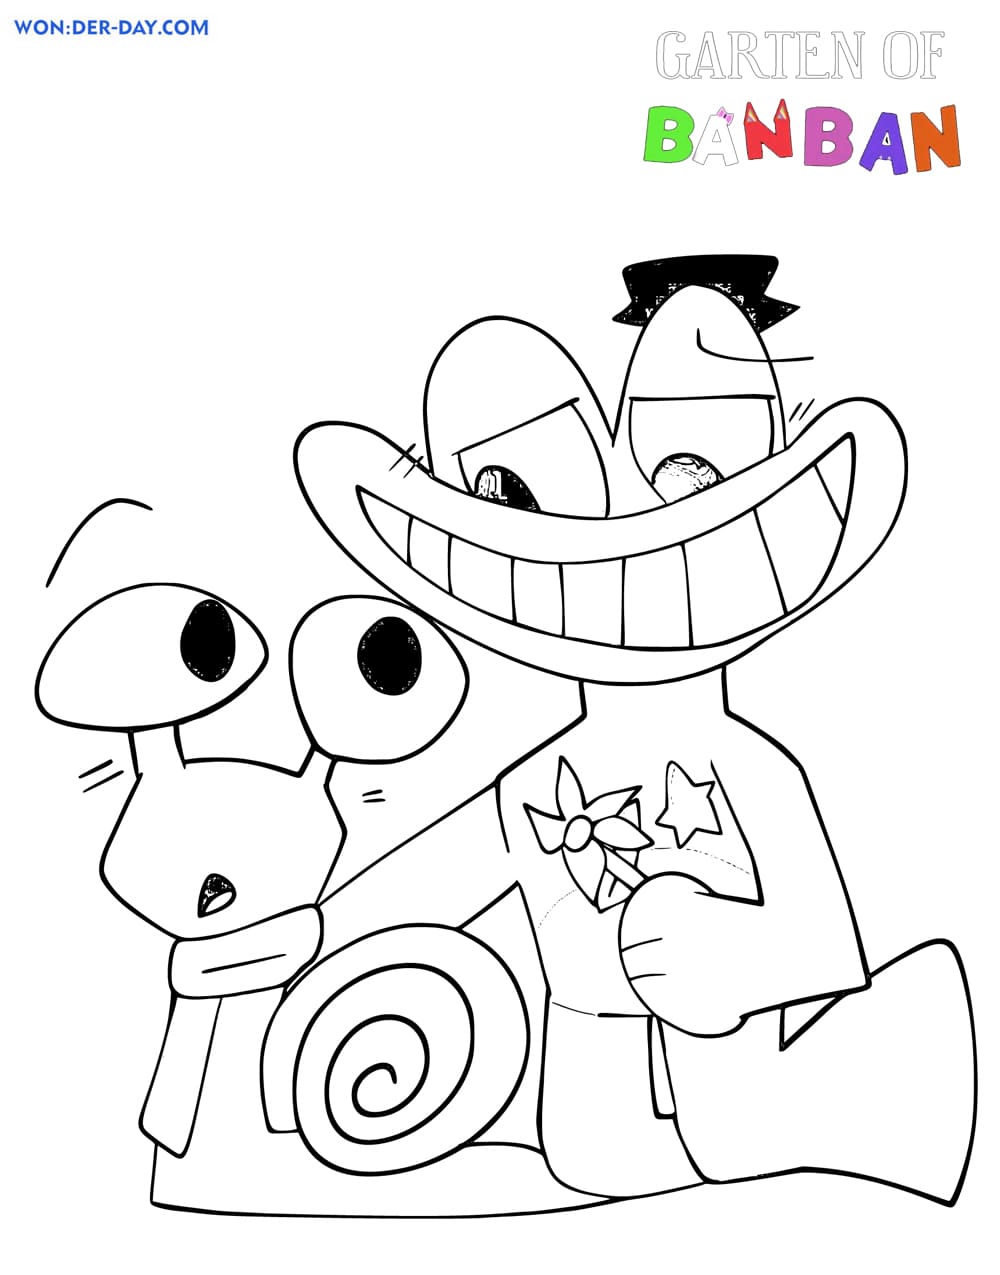 Desenhos para colorir Garten de Banban 2 – Se divertindo com crianças